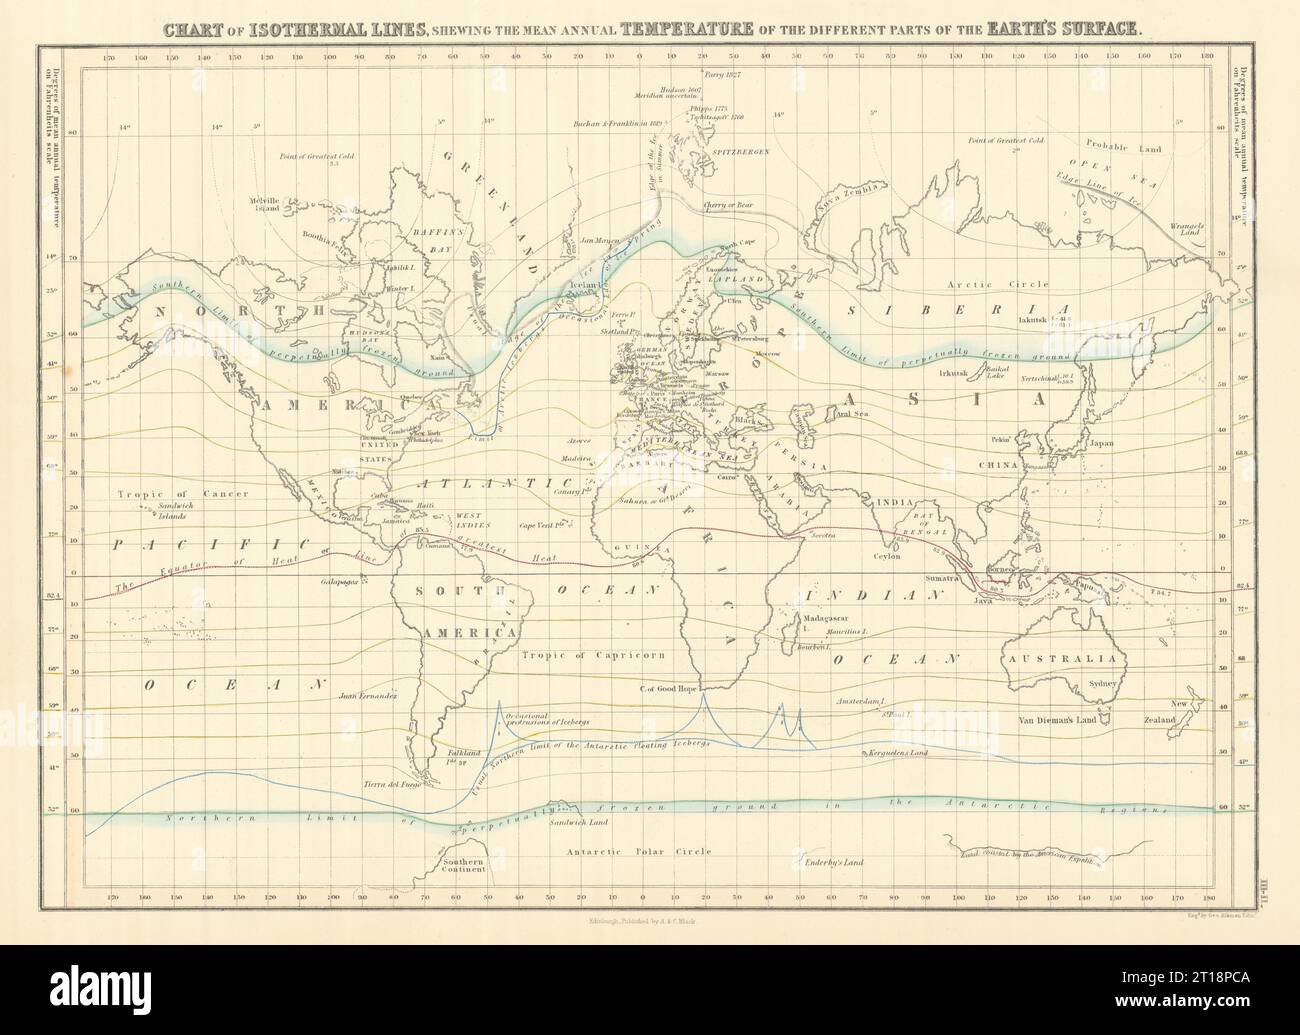 Weltdiagramm der isothermen Linien. Mittlere Jahrestemperatur. GEORGE AIKMAN 1854 Karte Stockfoto